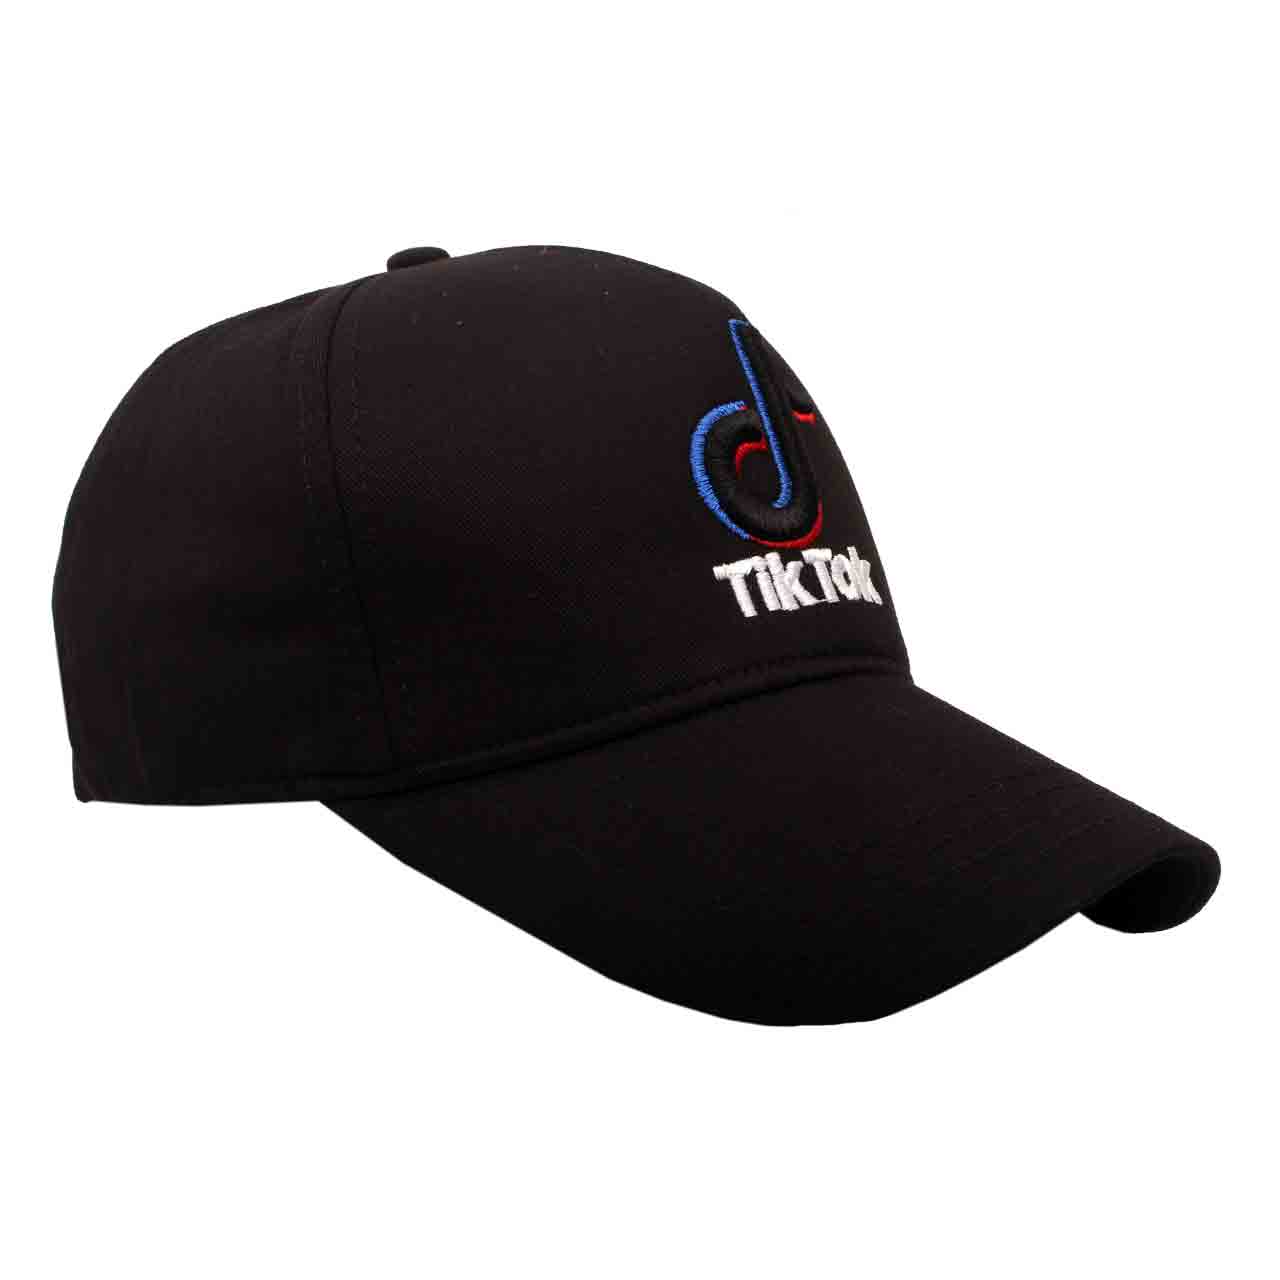 نکته خرید - قیمت روز کلاه کپ مدل TW028 خرید